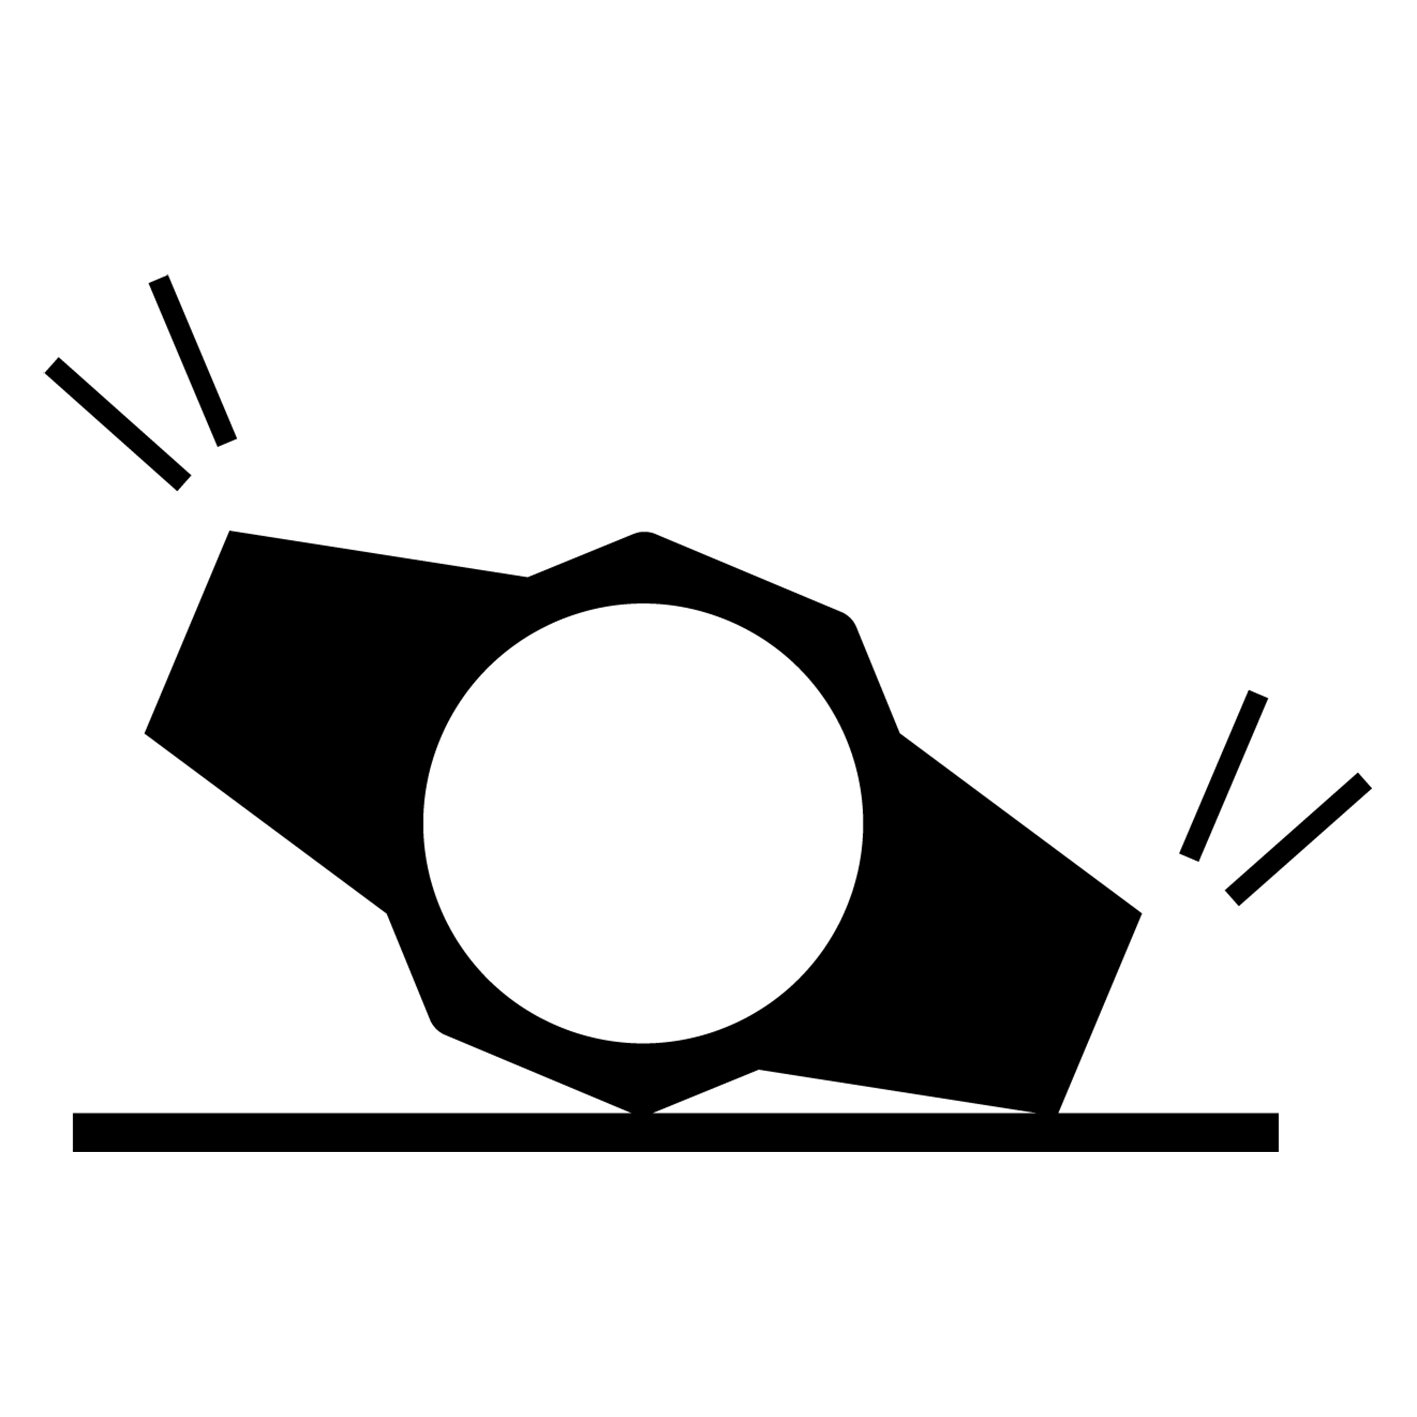 ジー・スクワッド GBD-100-1JF【国内正規品】【ノベルティ付・ｷﾞﾌﾄ包装･ｻｲｽﾞ調整無料】ｇショック 腕時計 メンズ画像